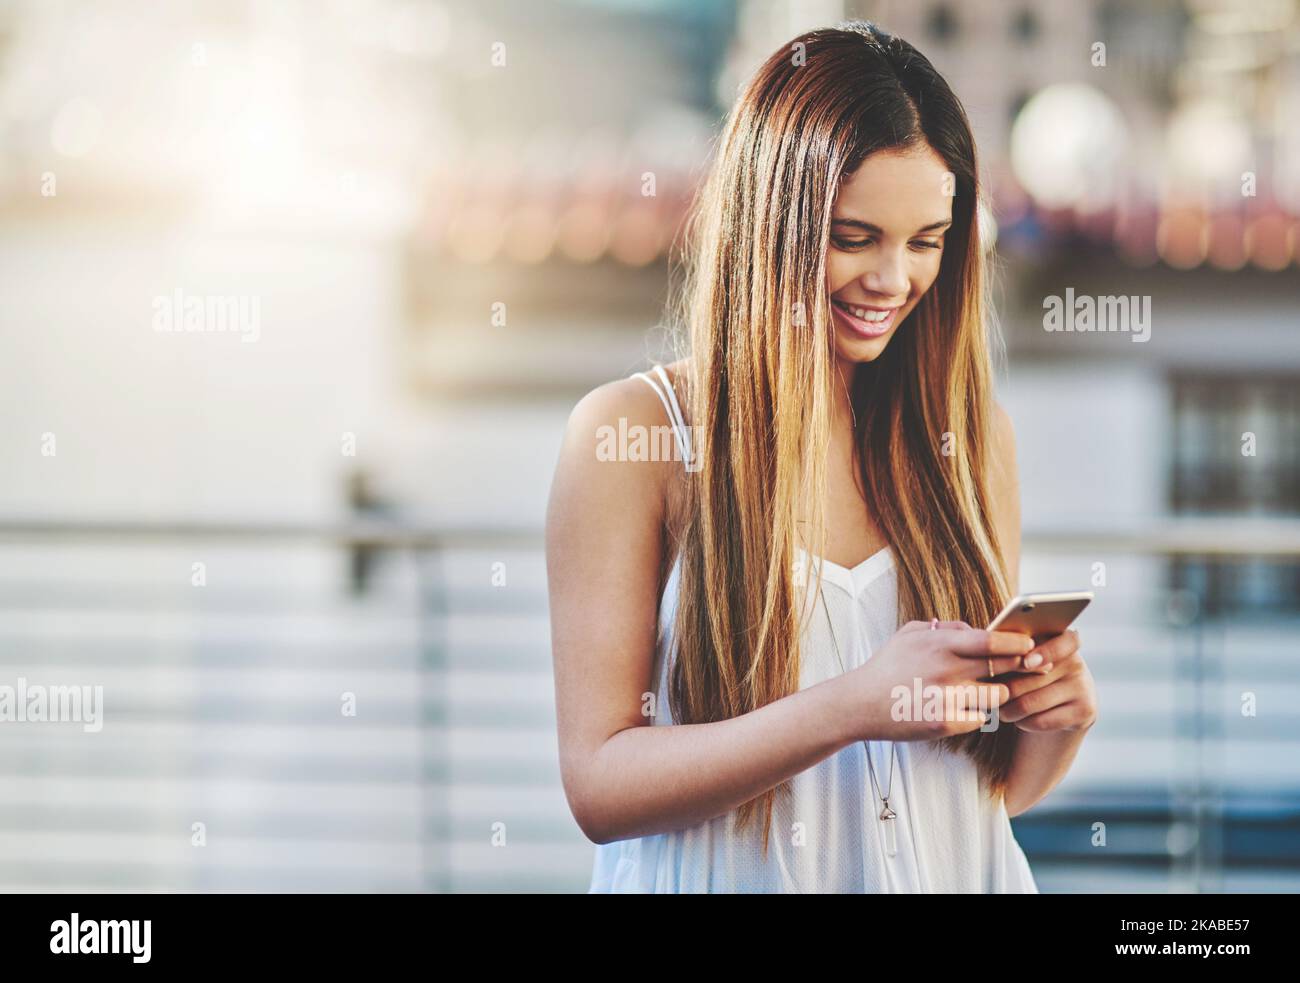 Risponde ad ogni messaggio: Una giovane donna attraente che invia un messaggio di testo mentre si è in piedi fuori. Foto Stock